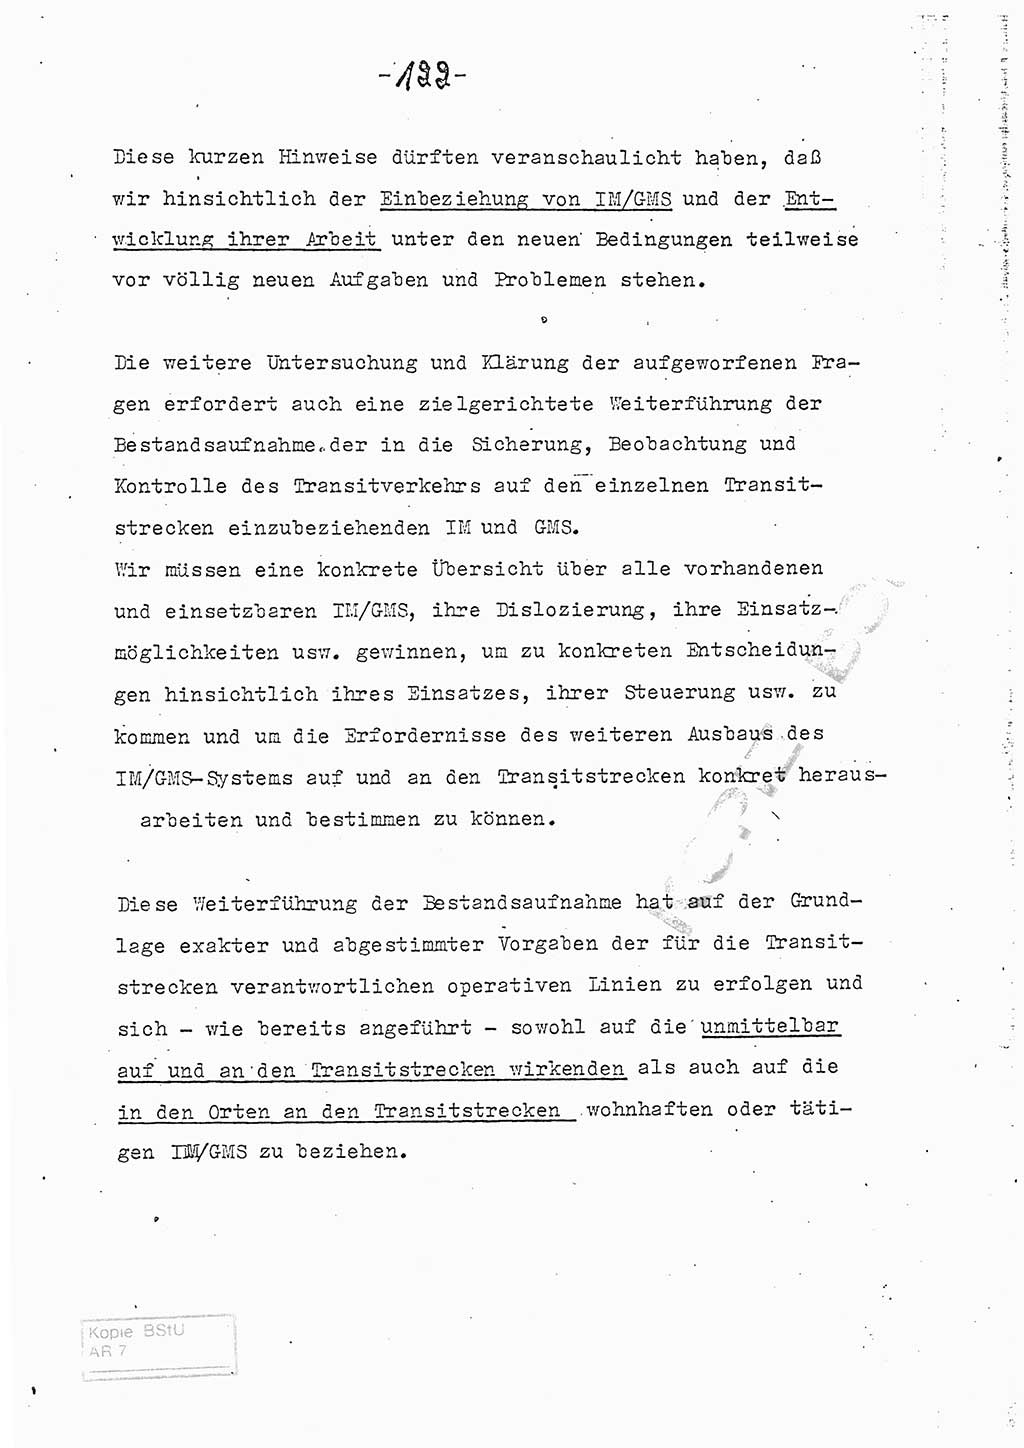 Referat (Entwurf) des Genossen Minister (Generaloberst Erich Mielke) auf der Dienstkonferenz 1972, Ministerium für Staatssicherheit (MfS) [Deutsche Demokratische Republik (DDR)], Der Minister, Geheime Verschlußsache (GVS) 008-150/72, Berlin 25.2.1972, Seite 122 (Ref. Entw. DK MfS DDR Min. GVS 008-150/72 1972, S. 122)